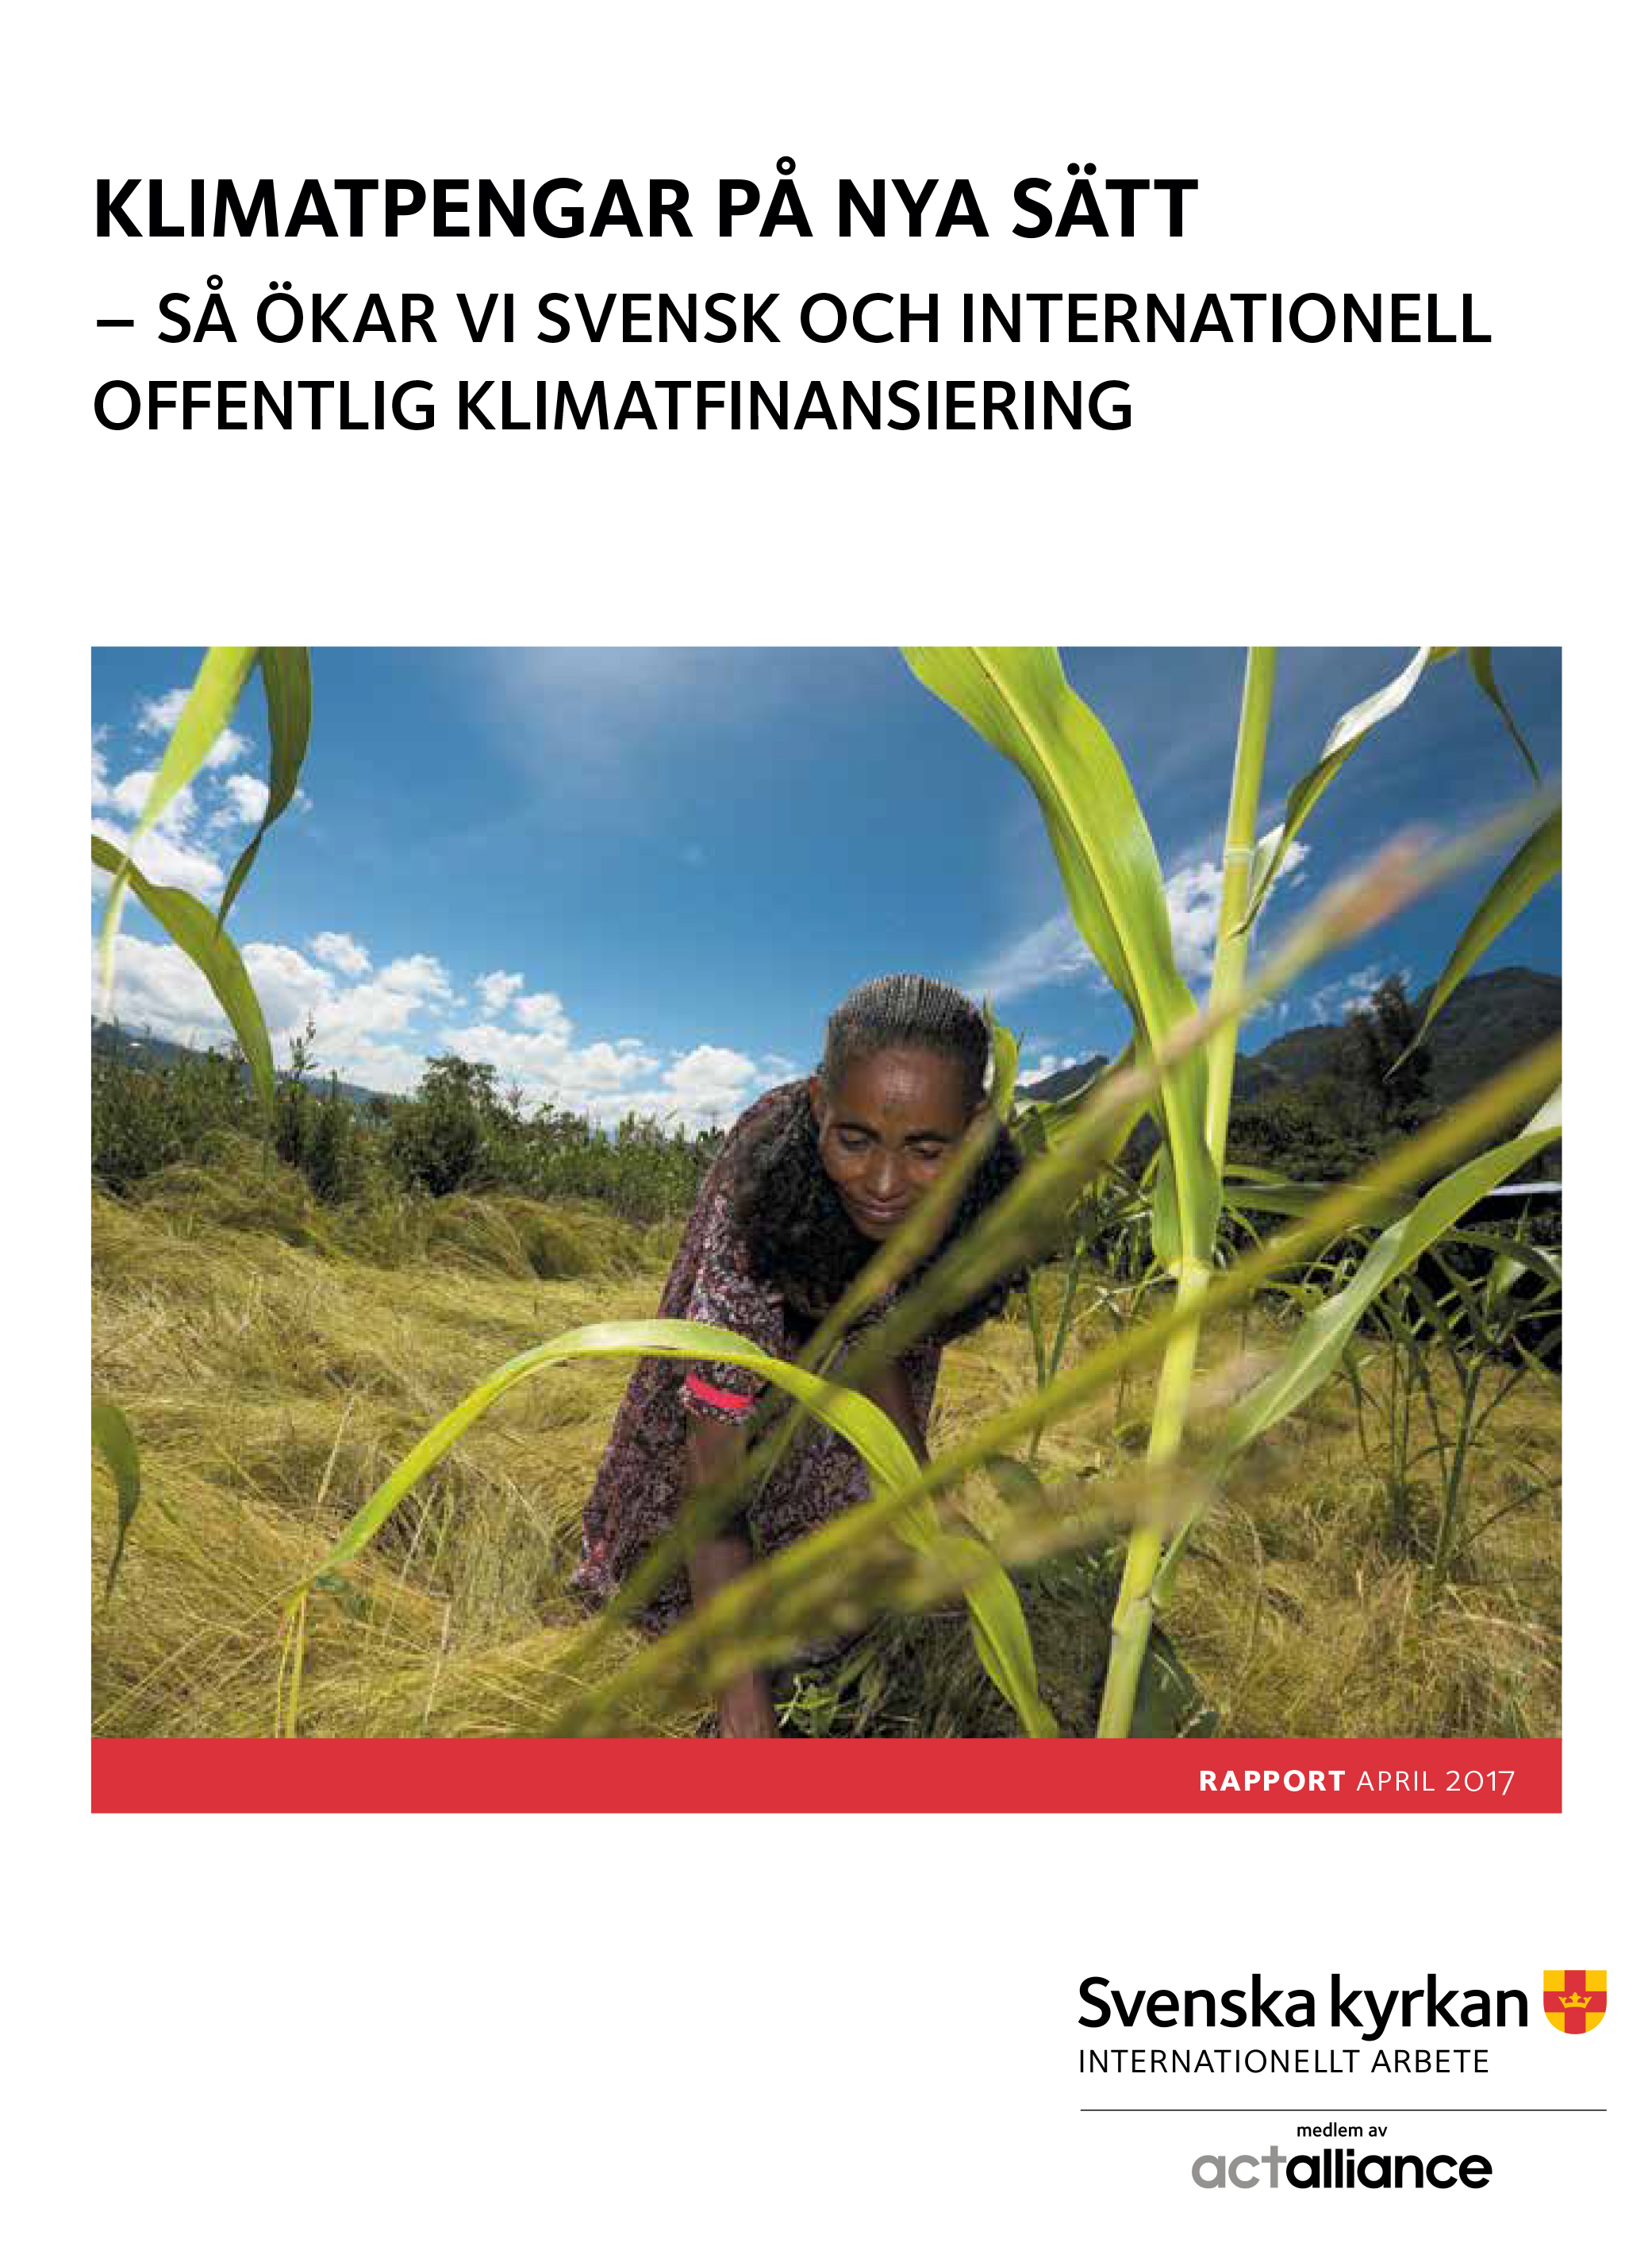 Framsidan till rapporten Klimatpengar på nya sätt visar en kvinna som skördar. 